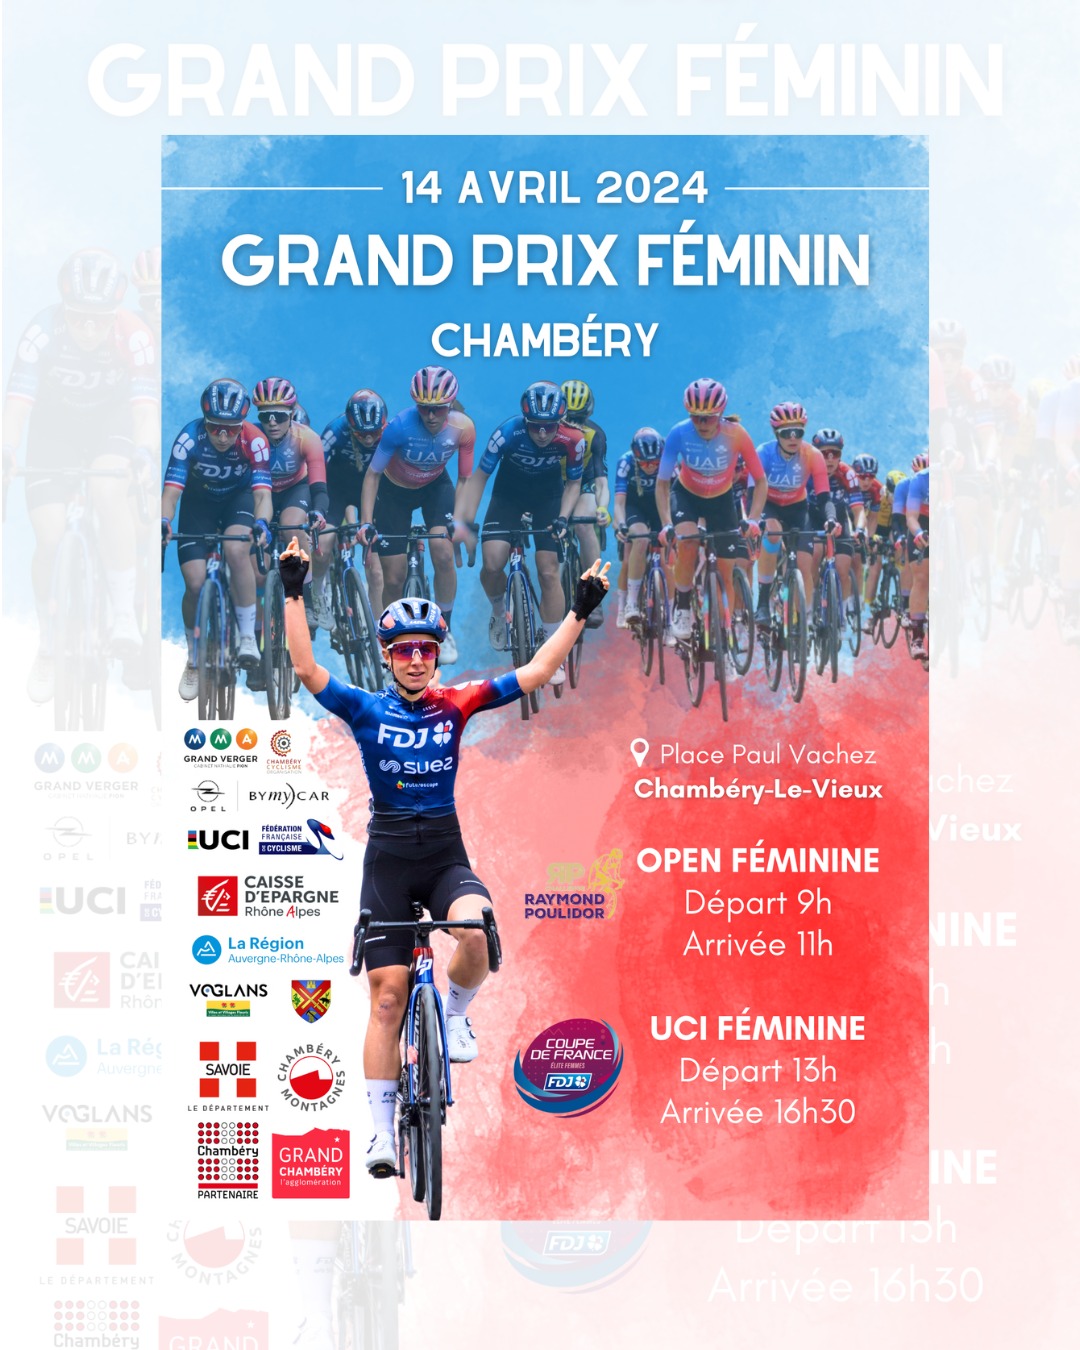 Grand prix féminin de cyclisme à Chambéry 2024